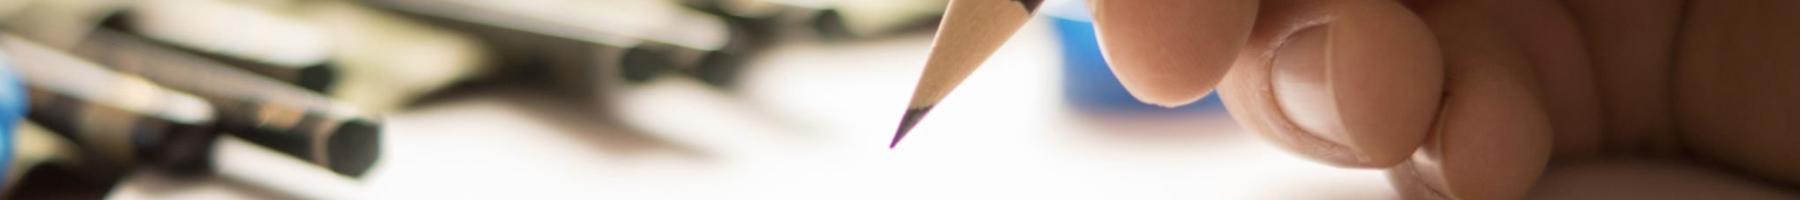 Une main tenant un crayon pendant un croquis.